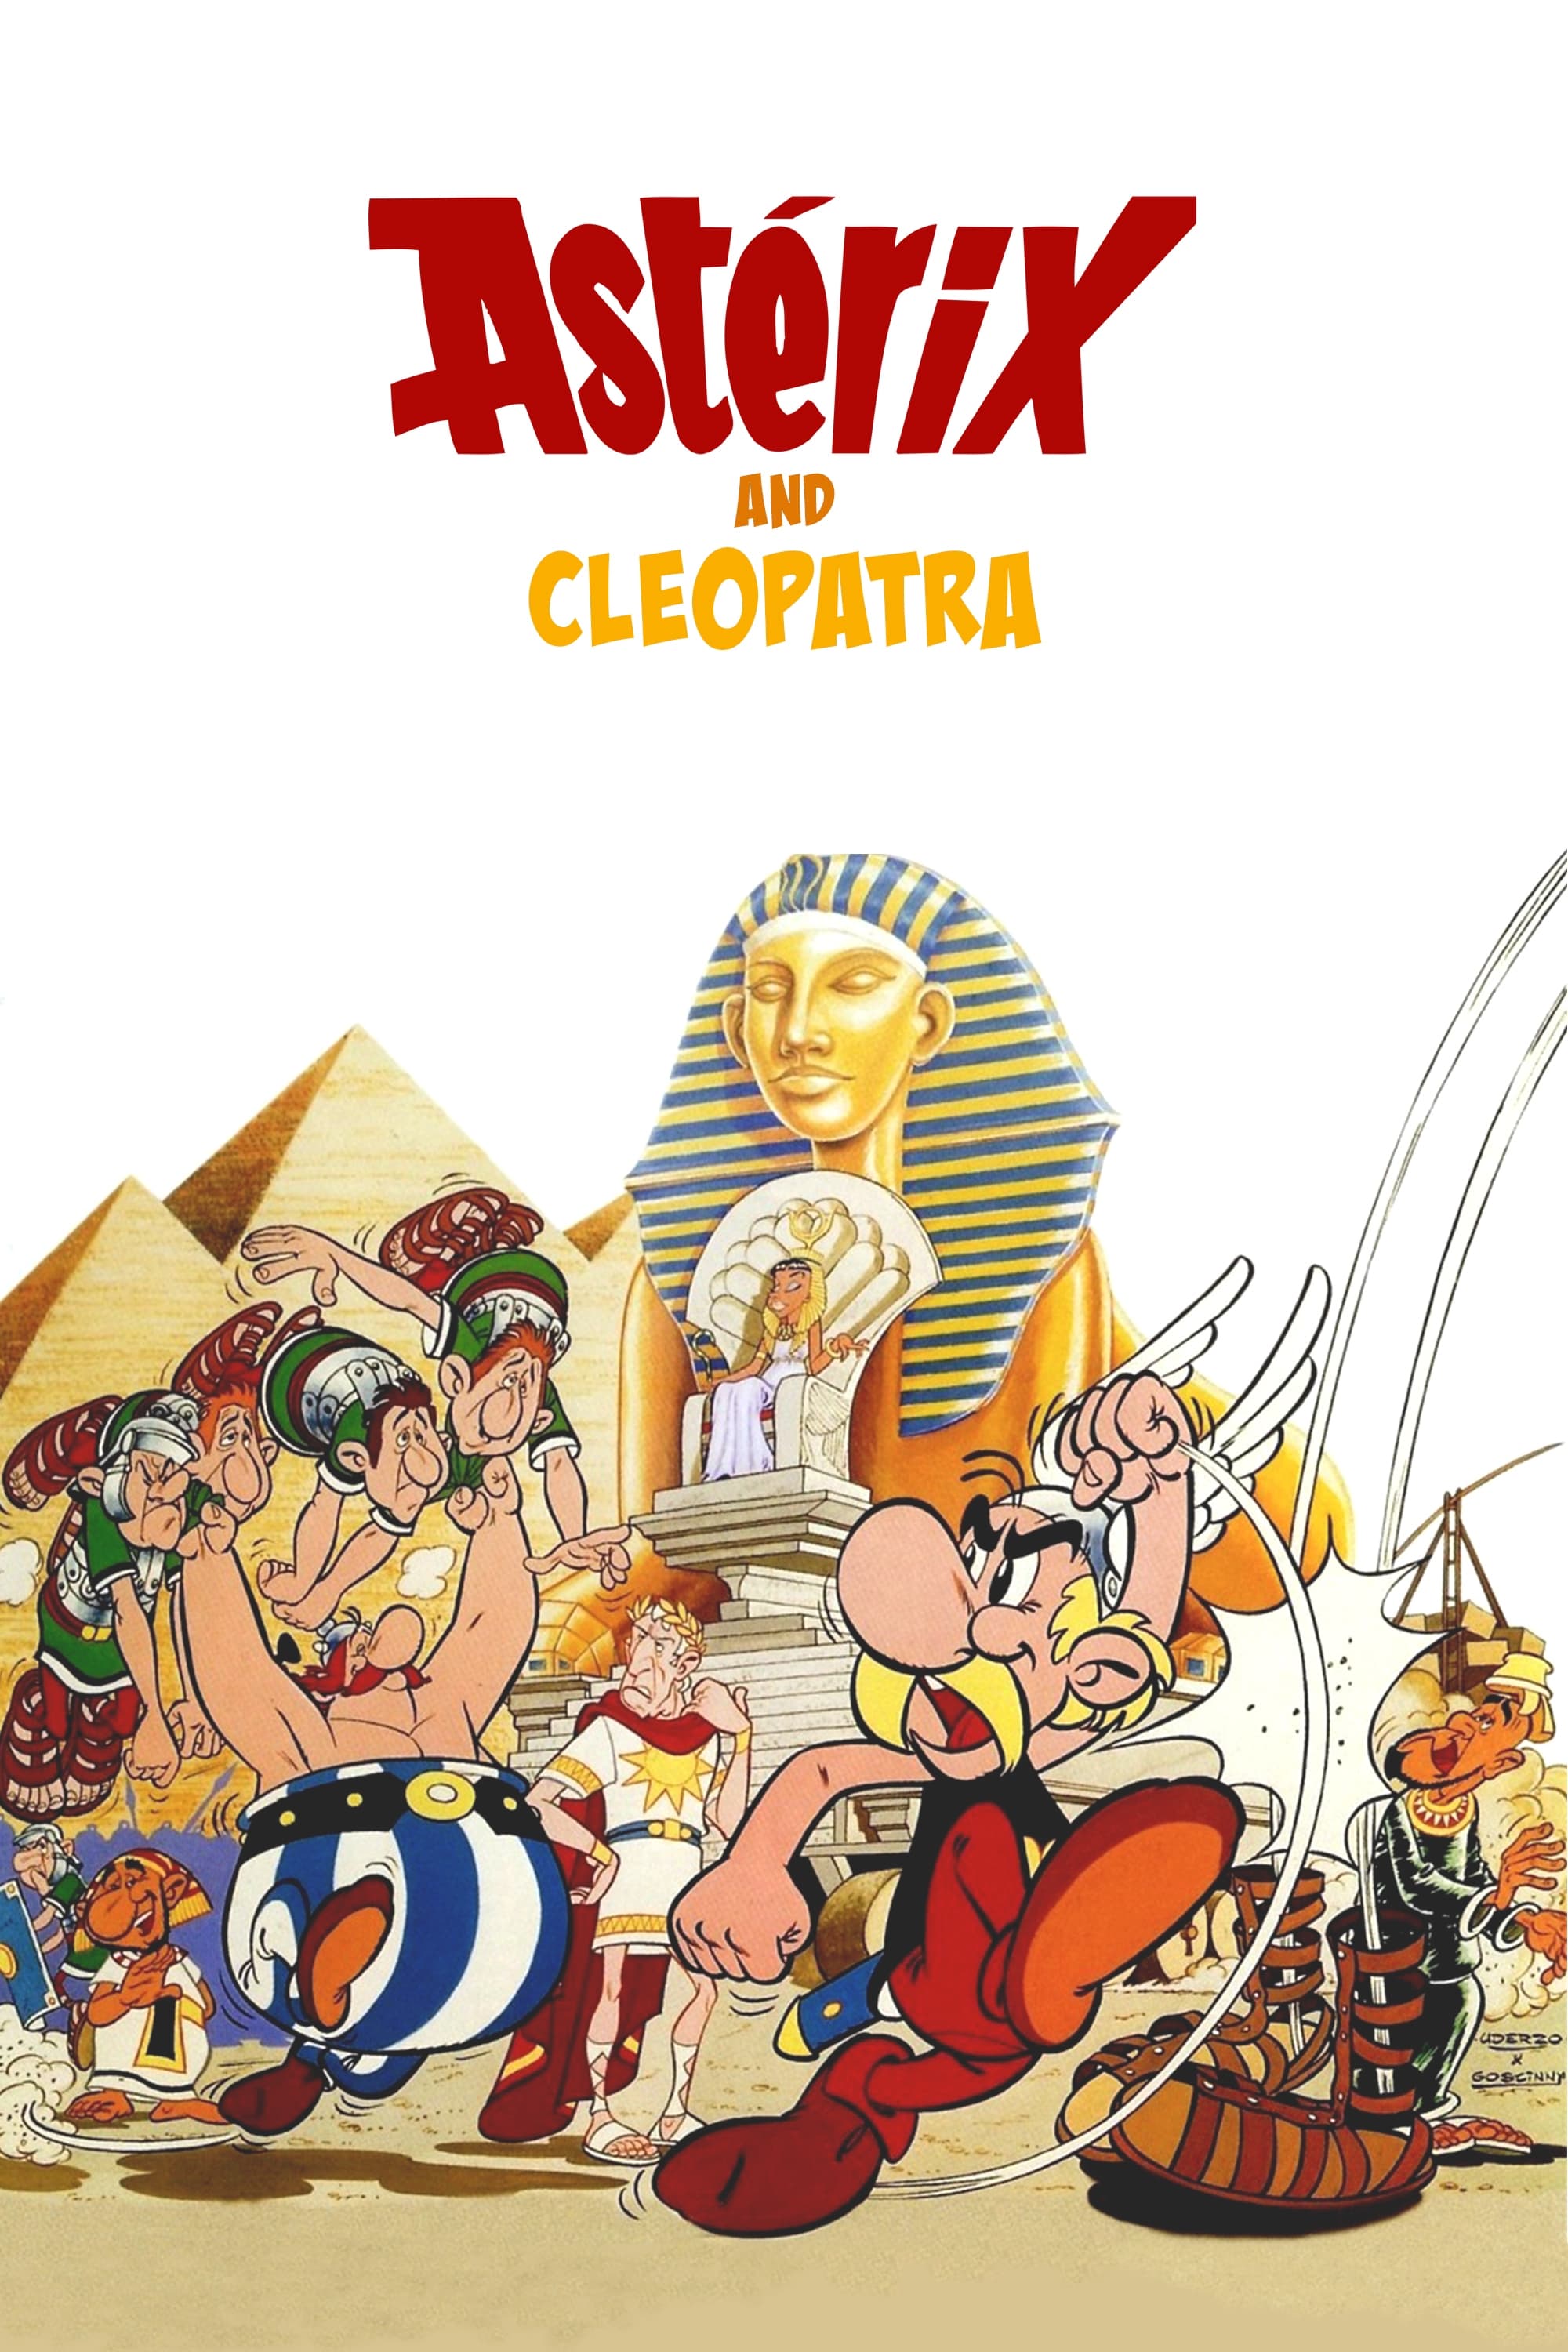 Asterix und Kleopatra (1968)